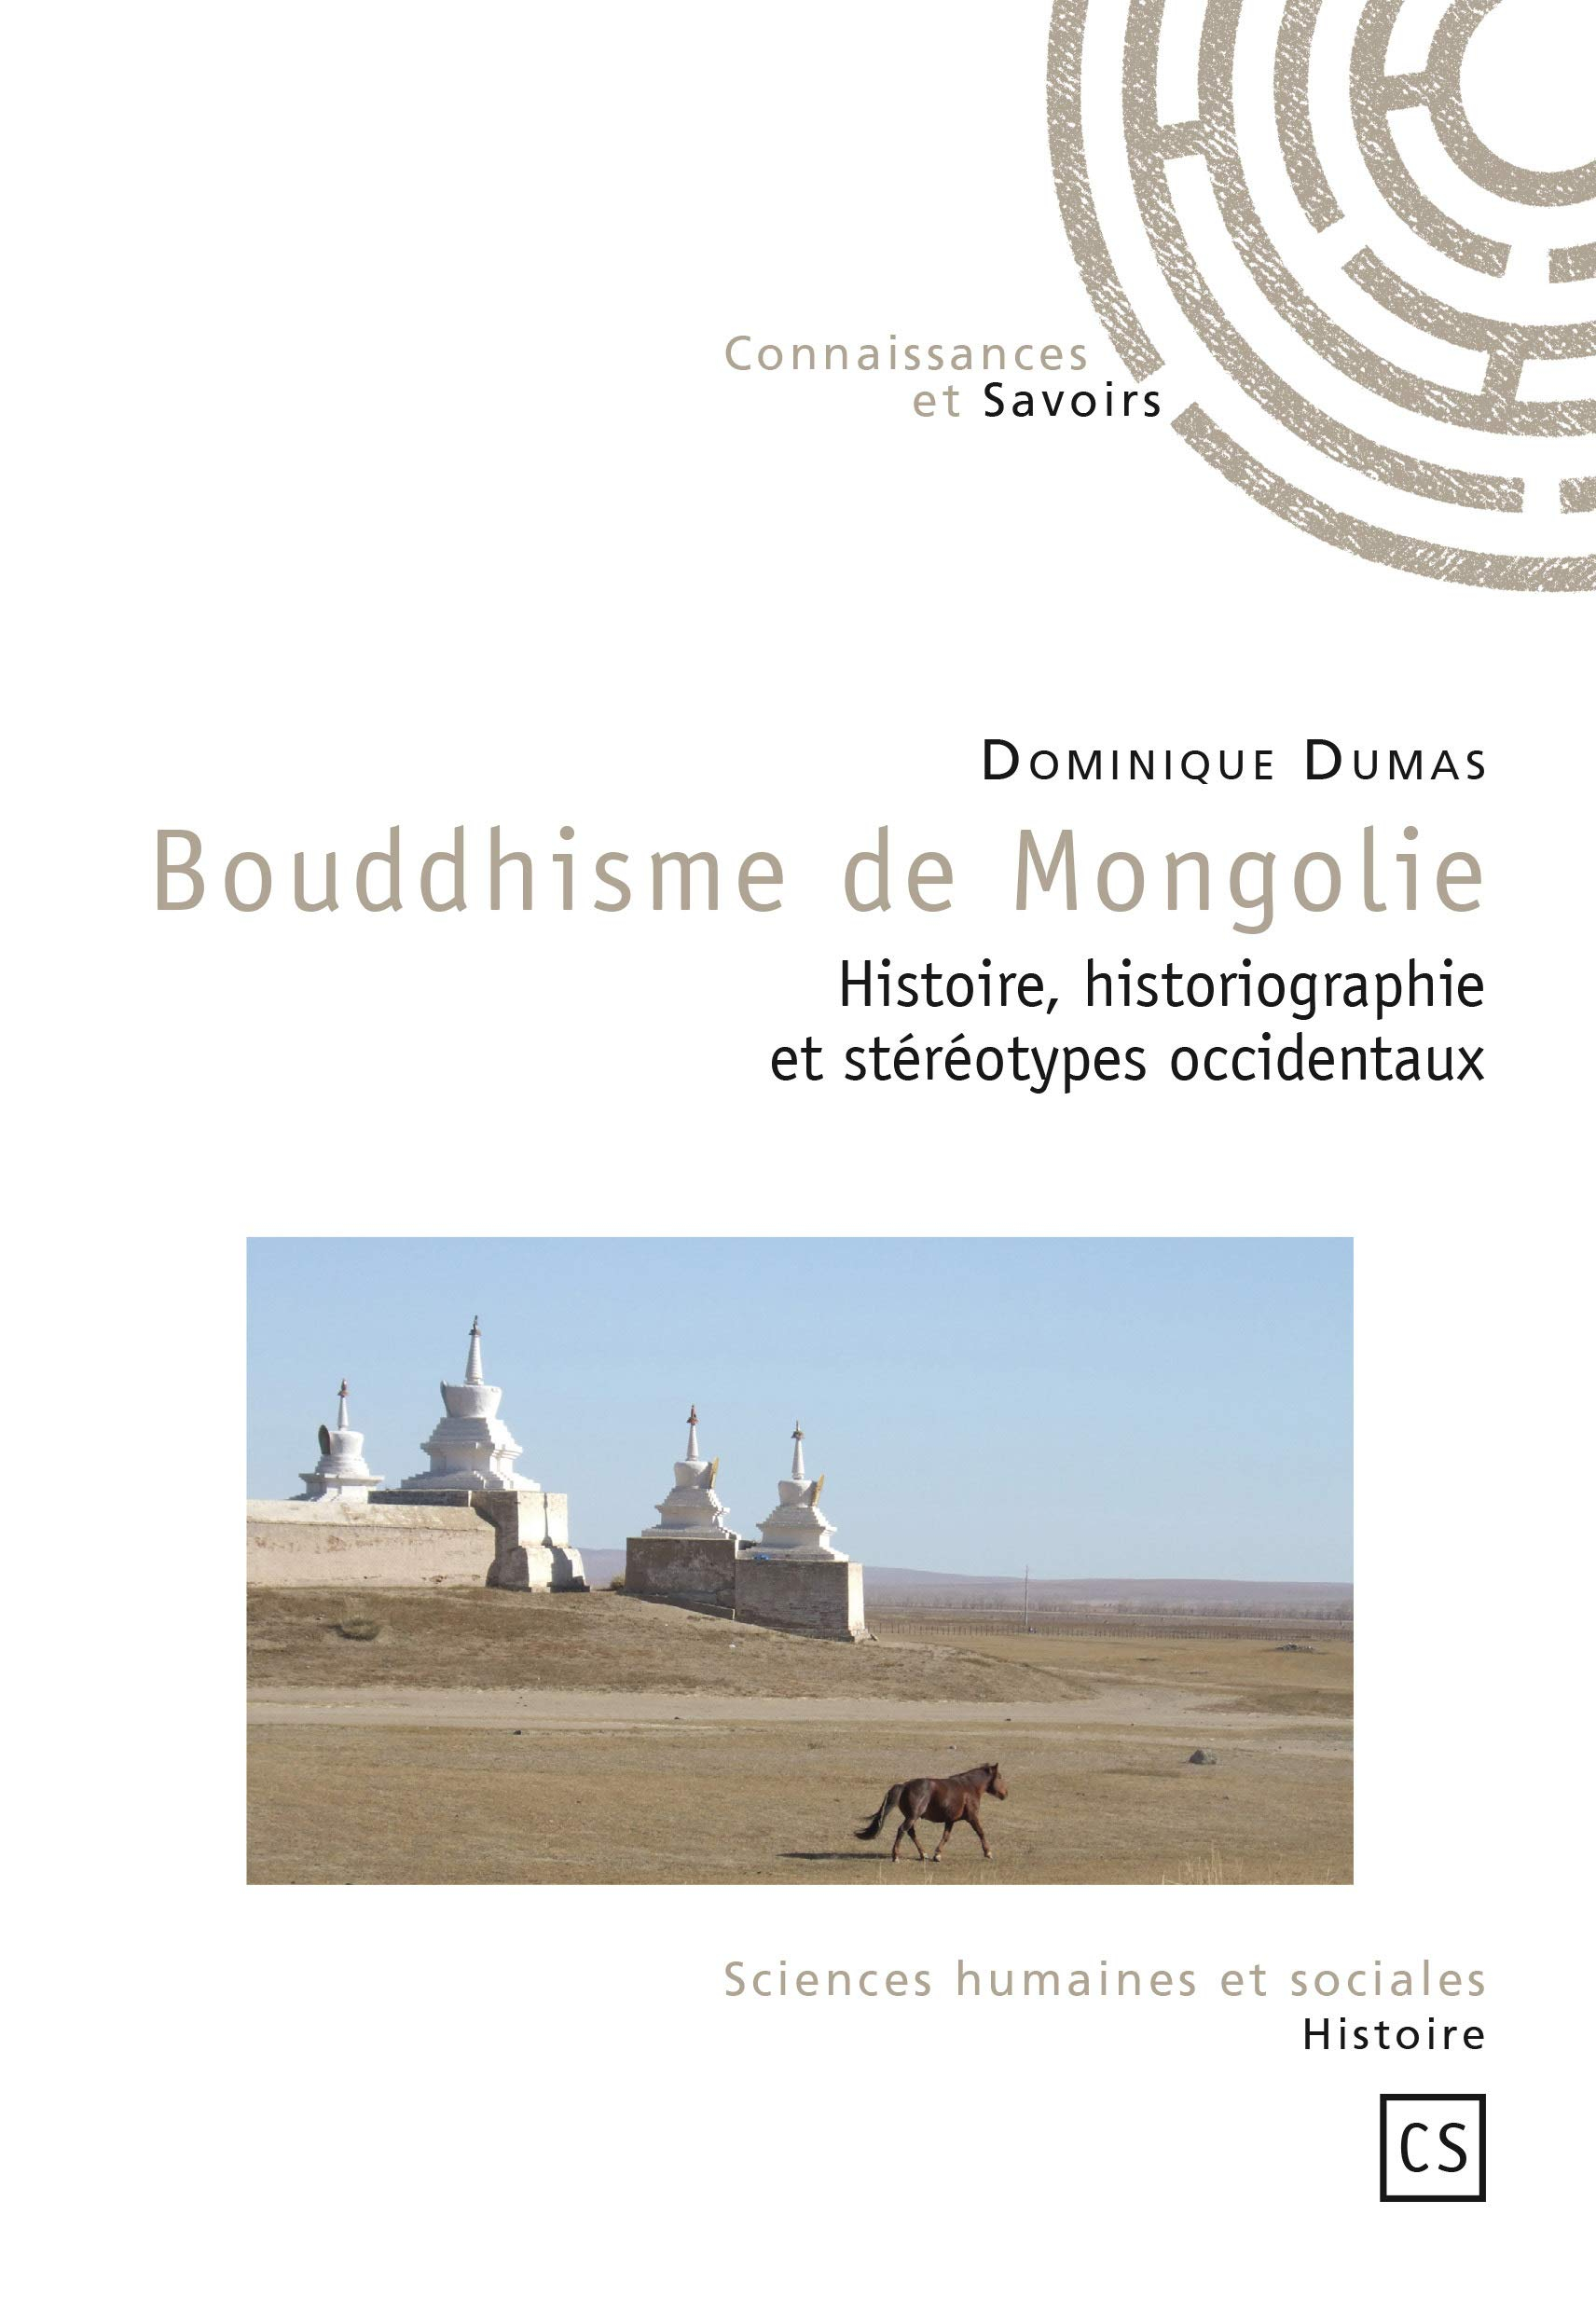 Bouddhisme de mongolie : Histoire, historiographie et stéréotypes occidentaux